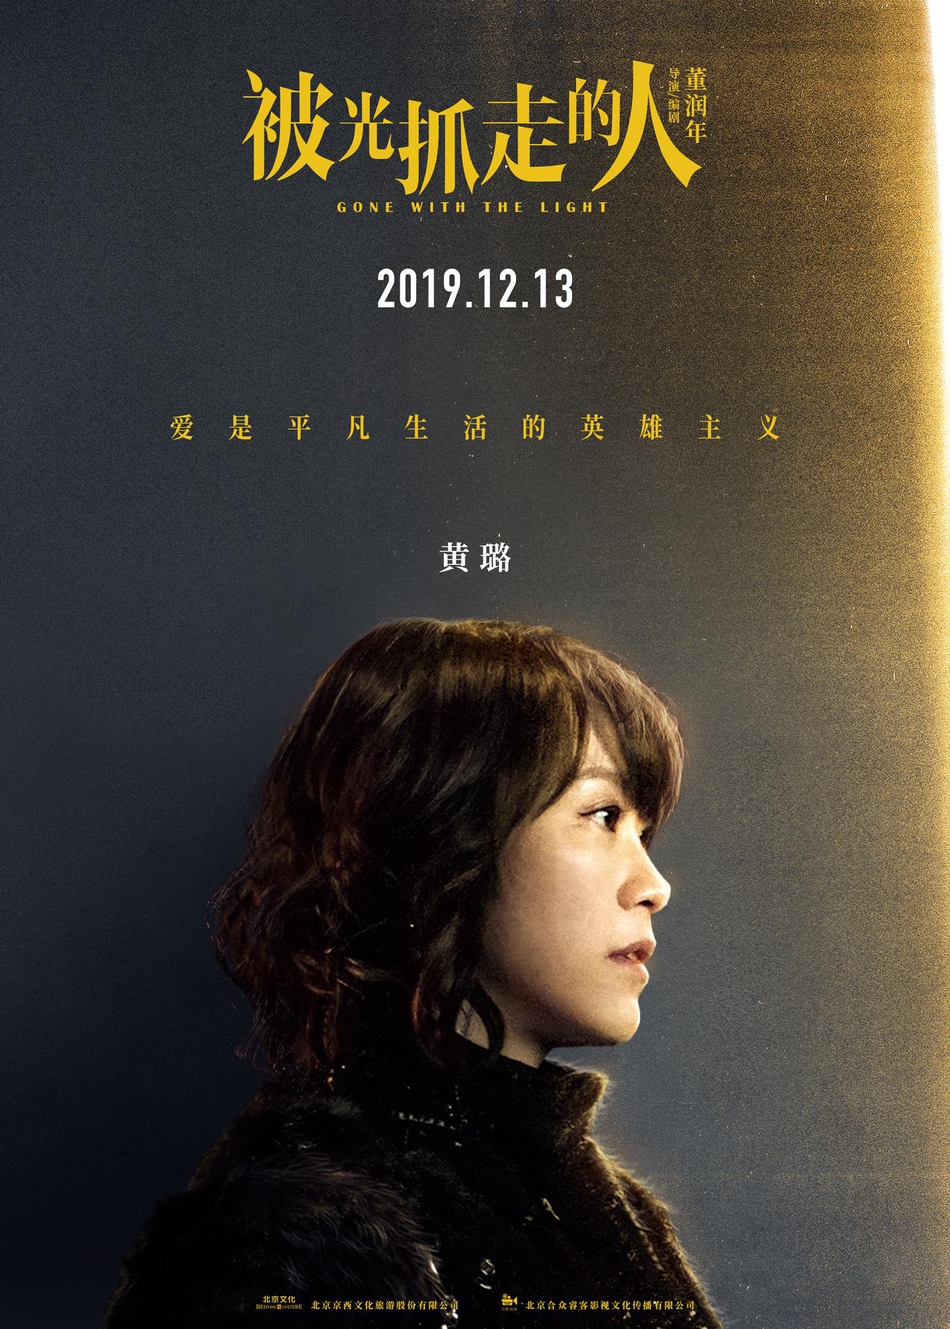 12月13日，黄渤、王珞丹主演电影《被光抓走的人》定档海报人物图片第10张